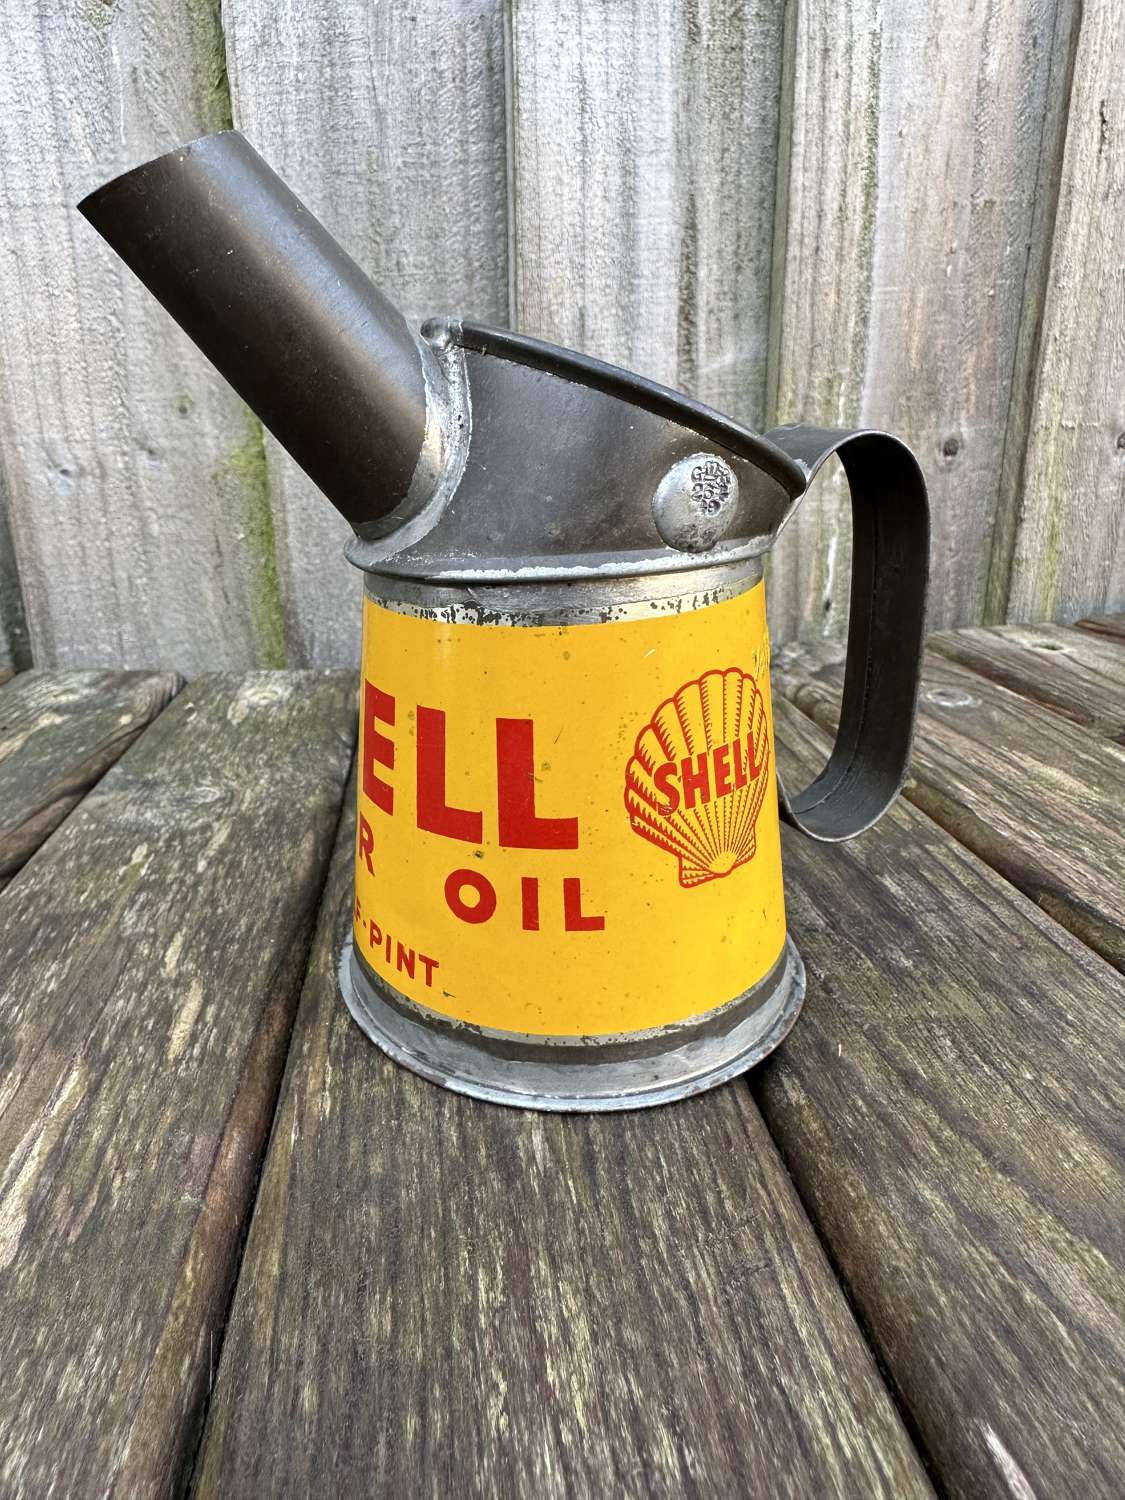 Quality shell motor oil, oil pourer (near mint)